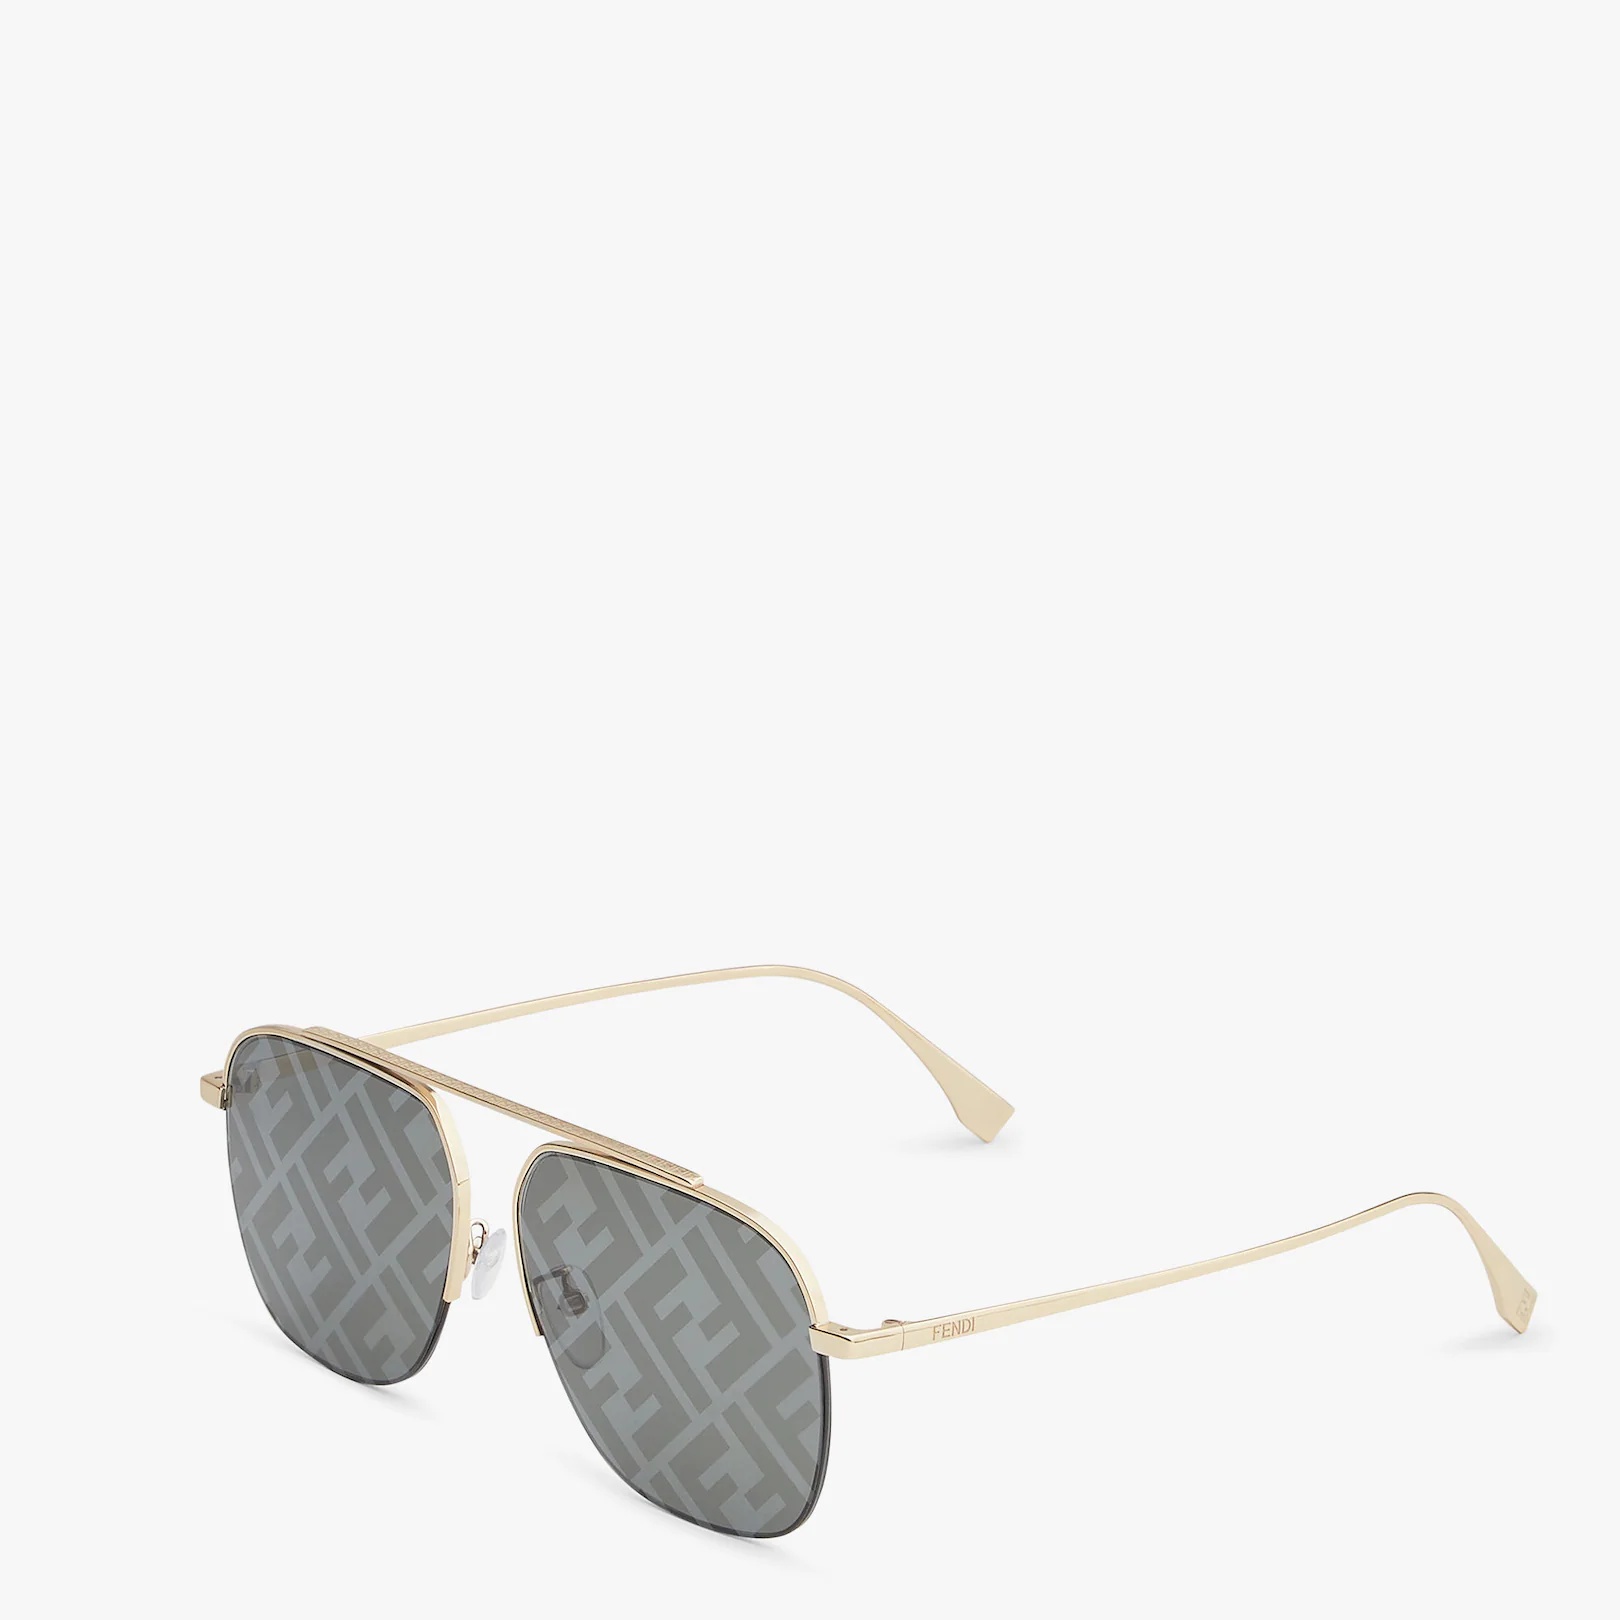 Gold-colored sunglasses - 2